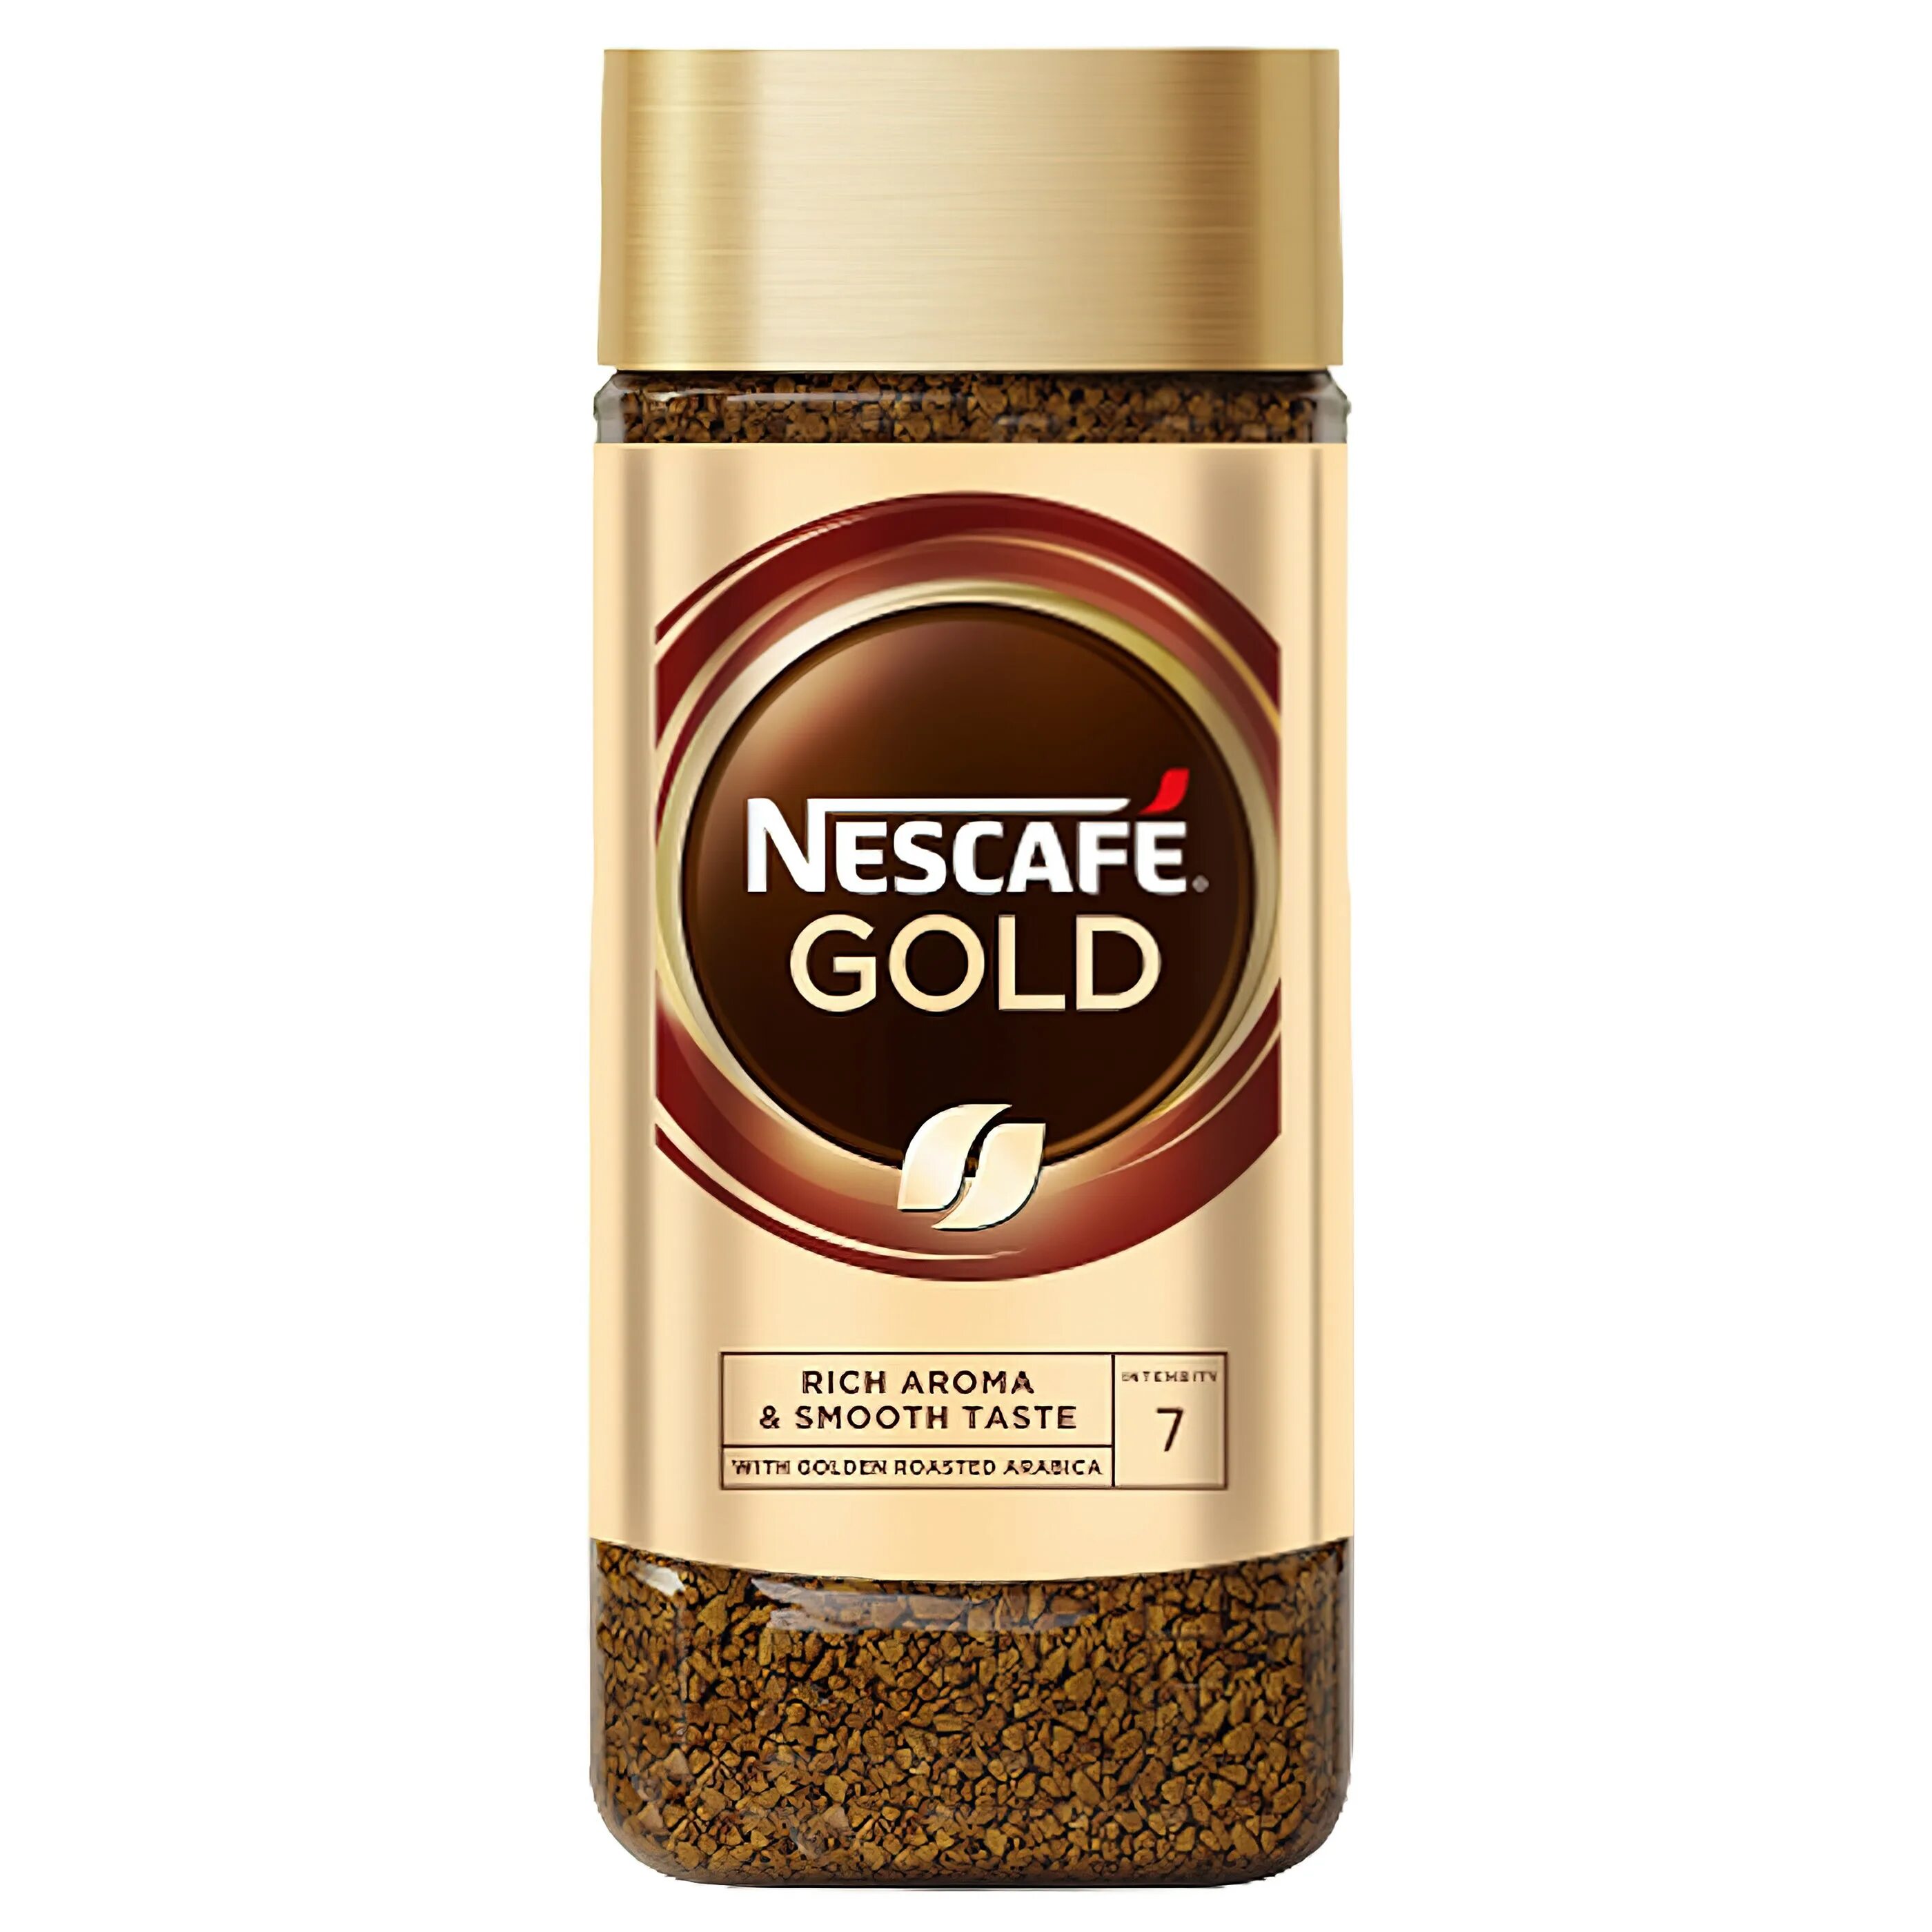 Кофе nescafe gold 190 г. Нескафе Голд 190. Nescafe Gold Aroma intenso. Нескафе Голд ассортимент. Нескафе Голд промо.